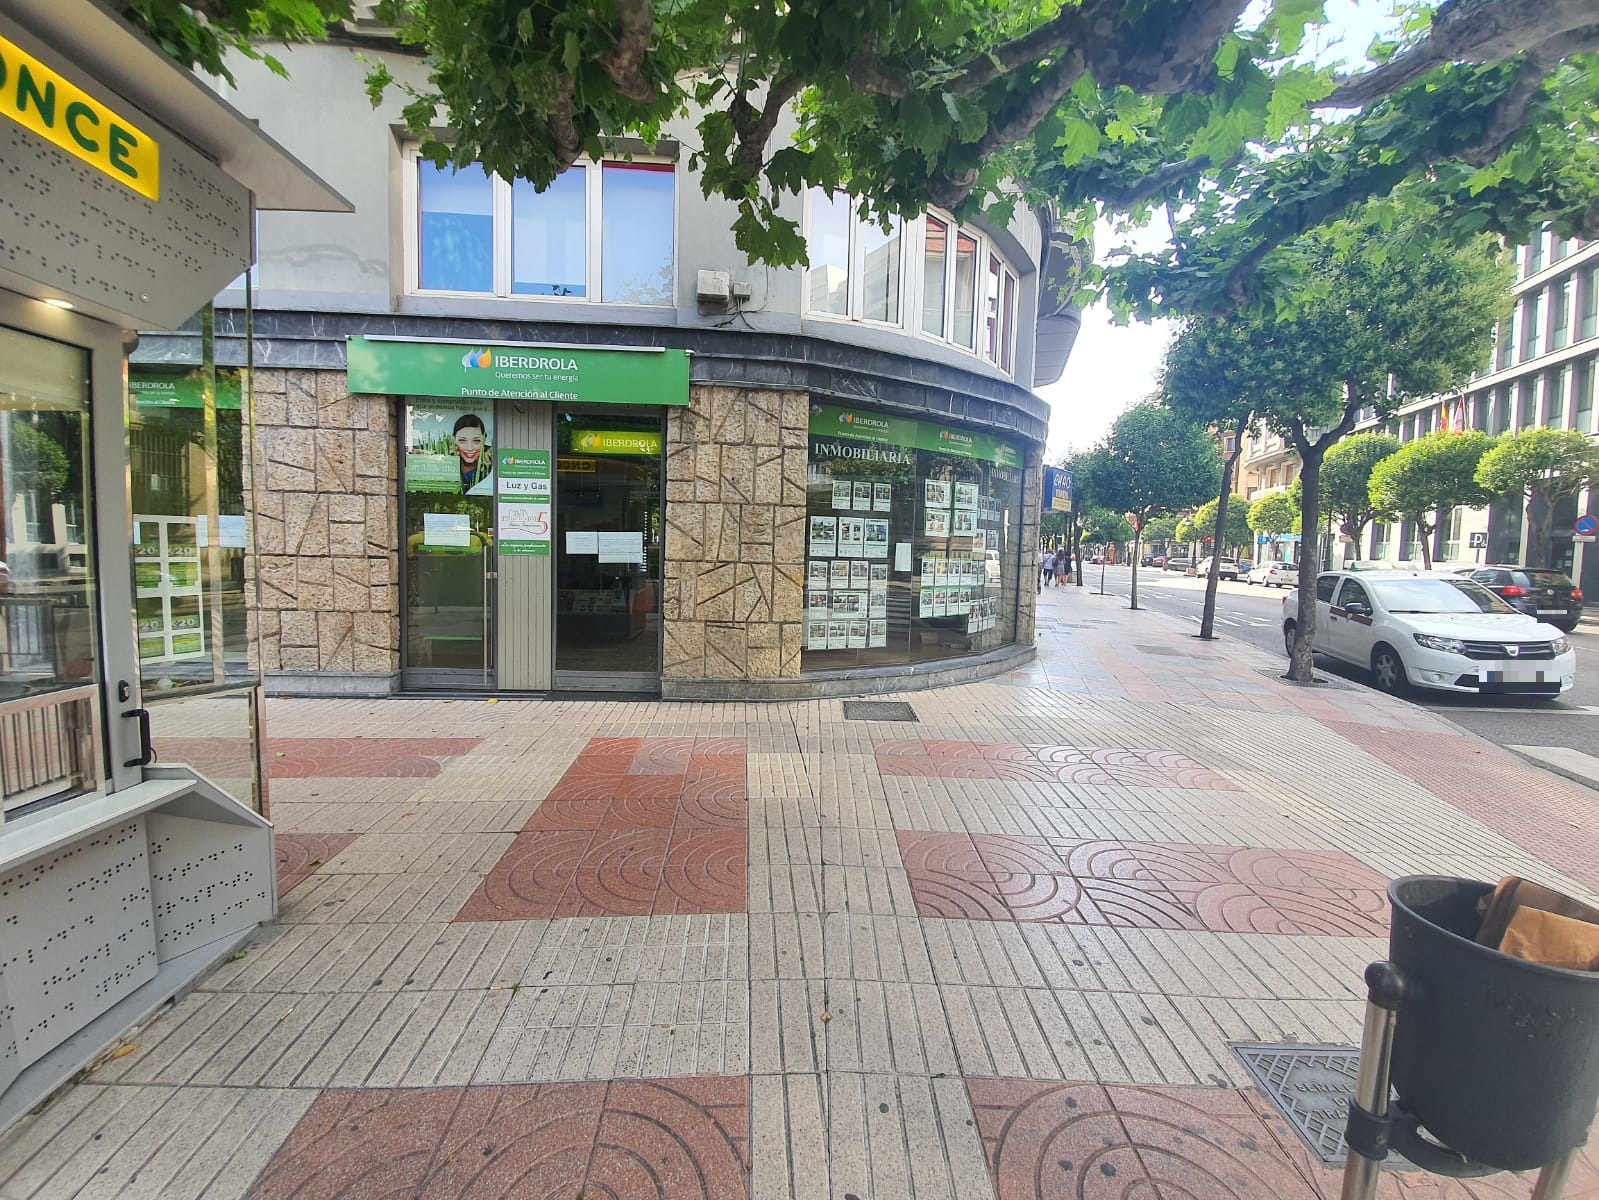 Iberdrola cierra las puertas de su oficina en León